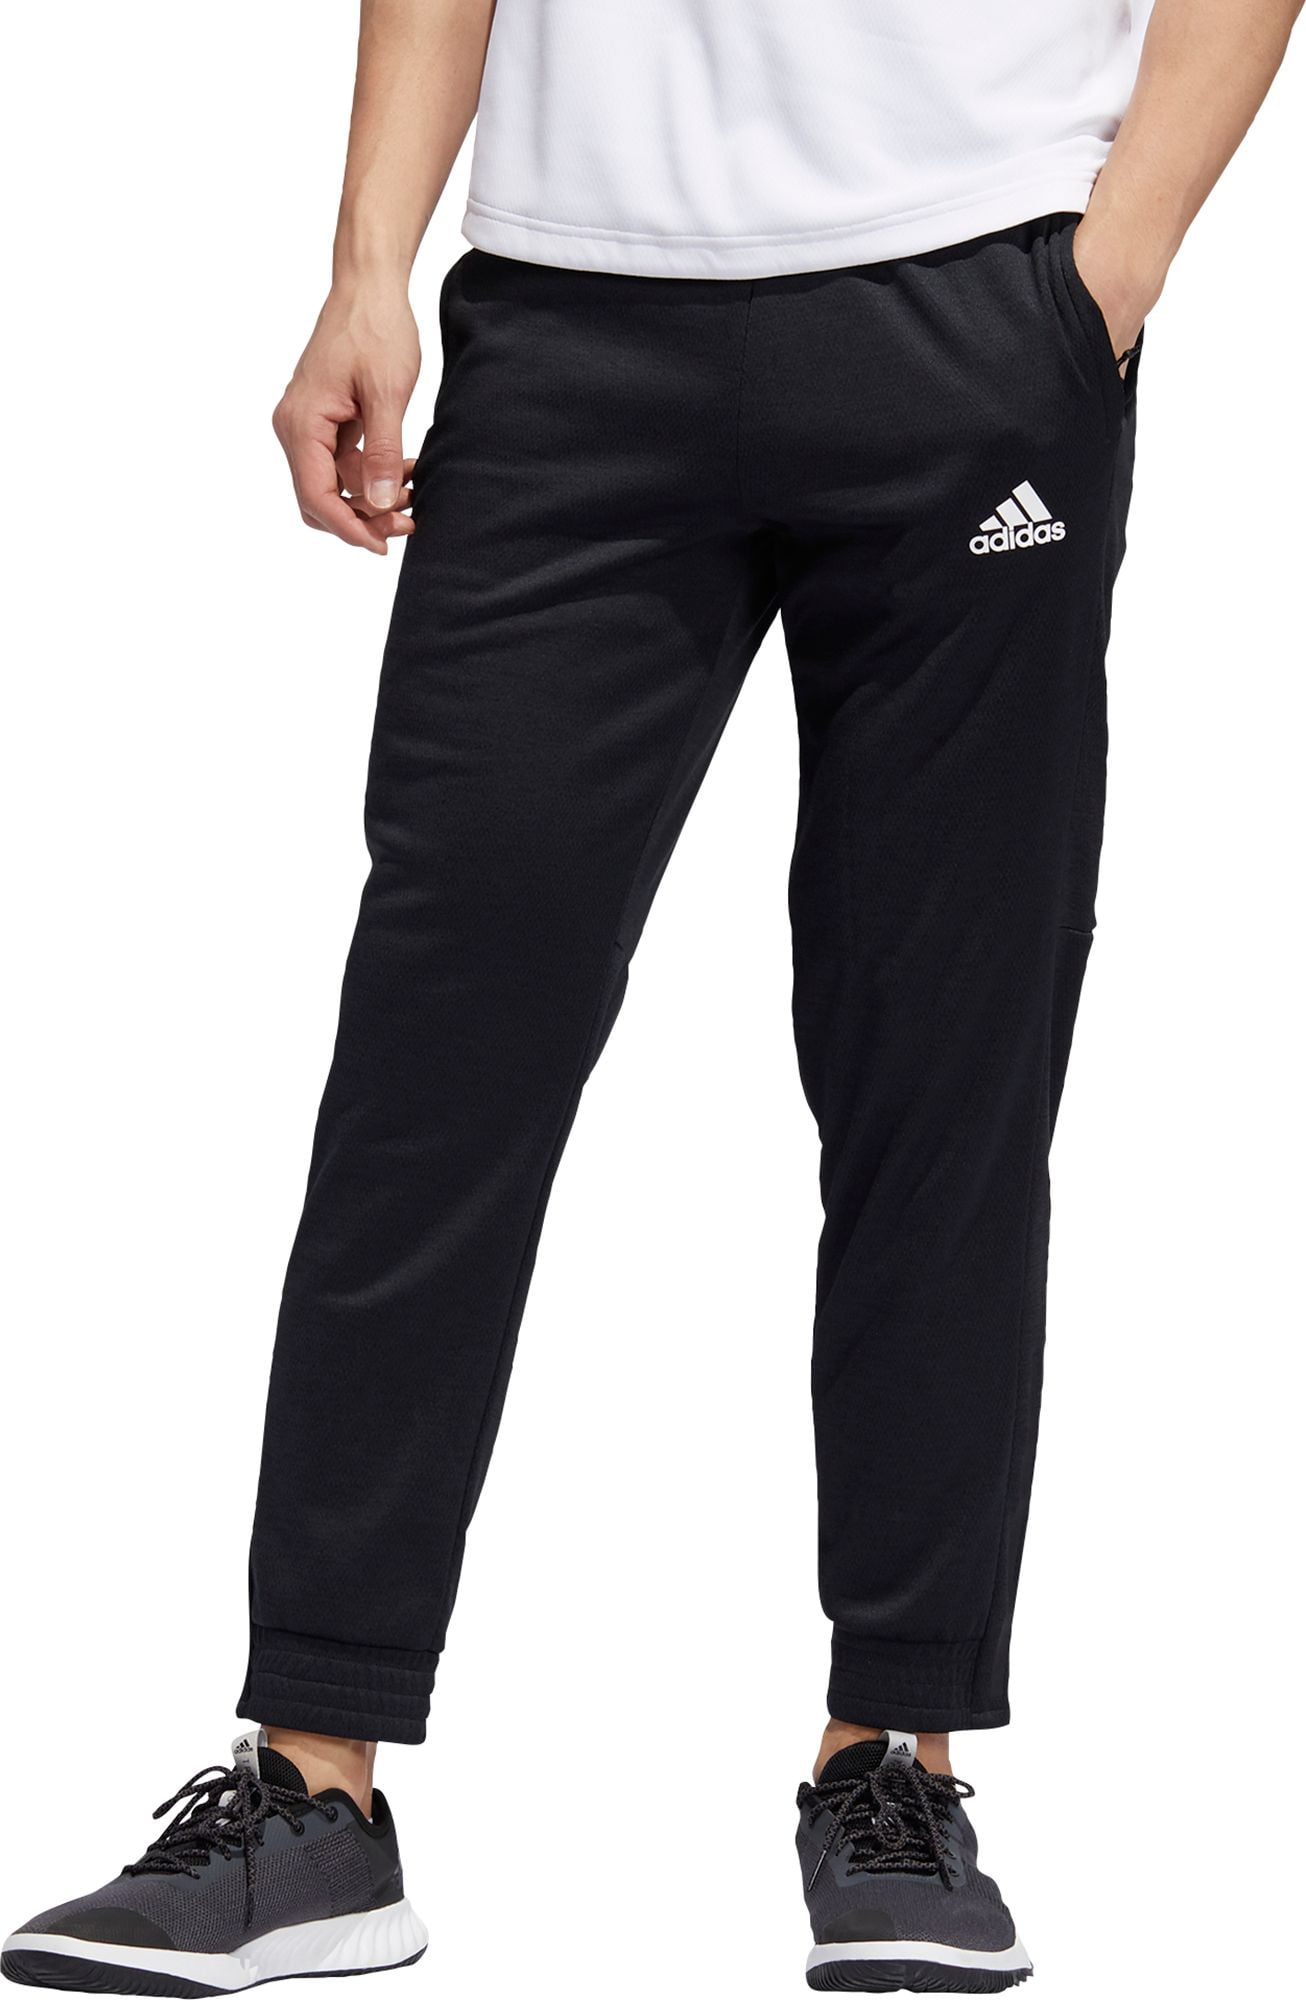 adidas Men's Team Issue Jogger Pants - Walmart.com